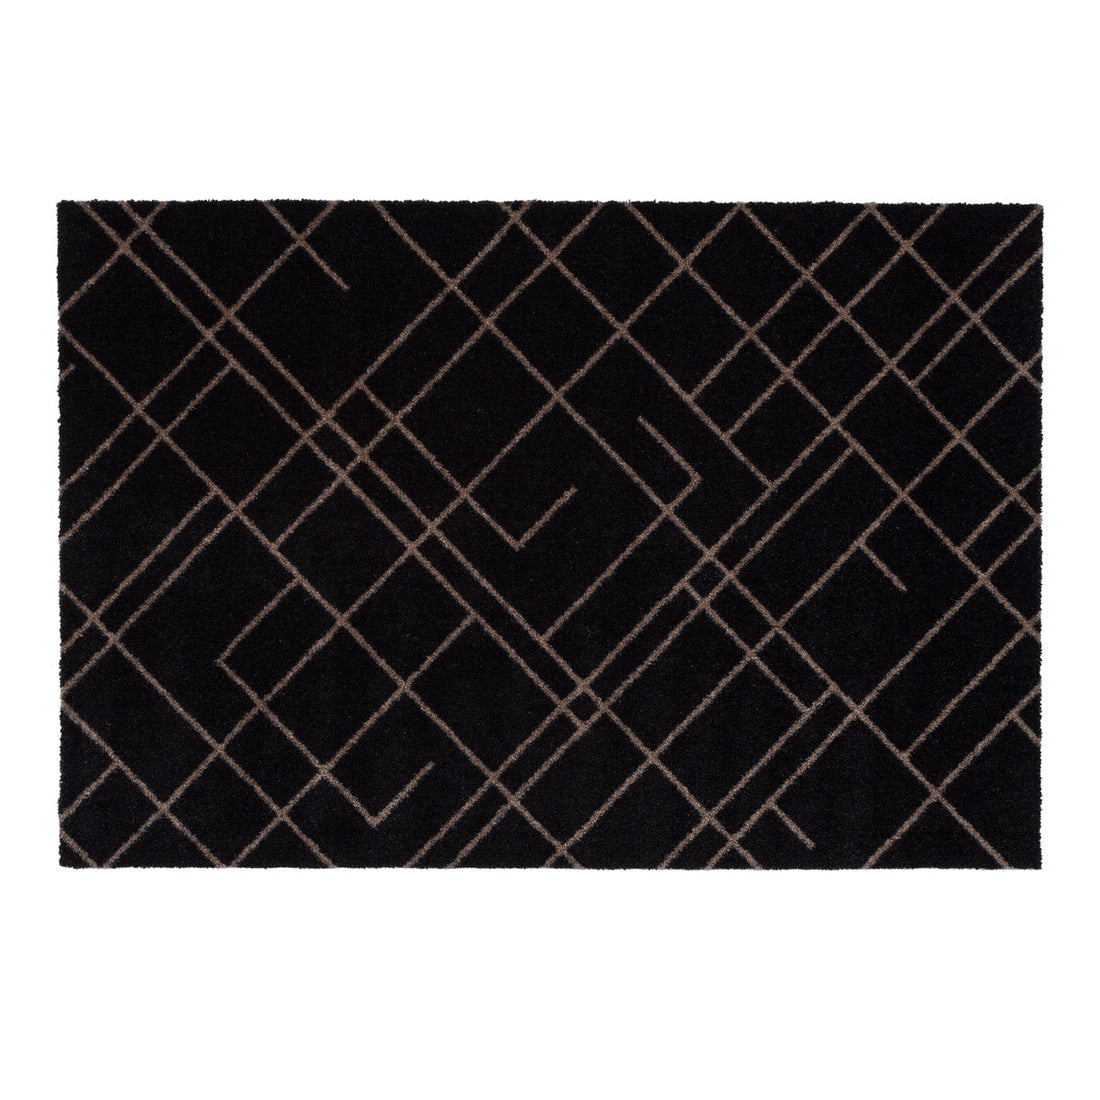 Bodenmatte 60 x 90 cm - Linien/Sandschwarz